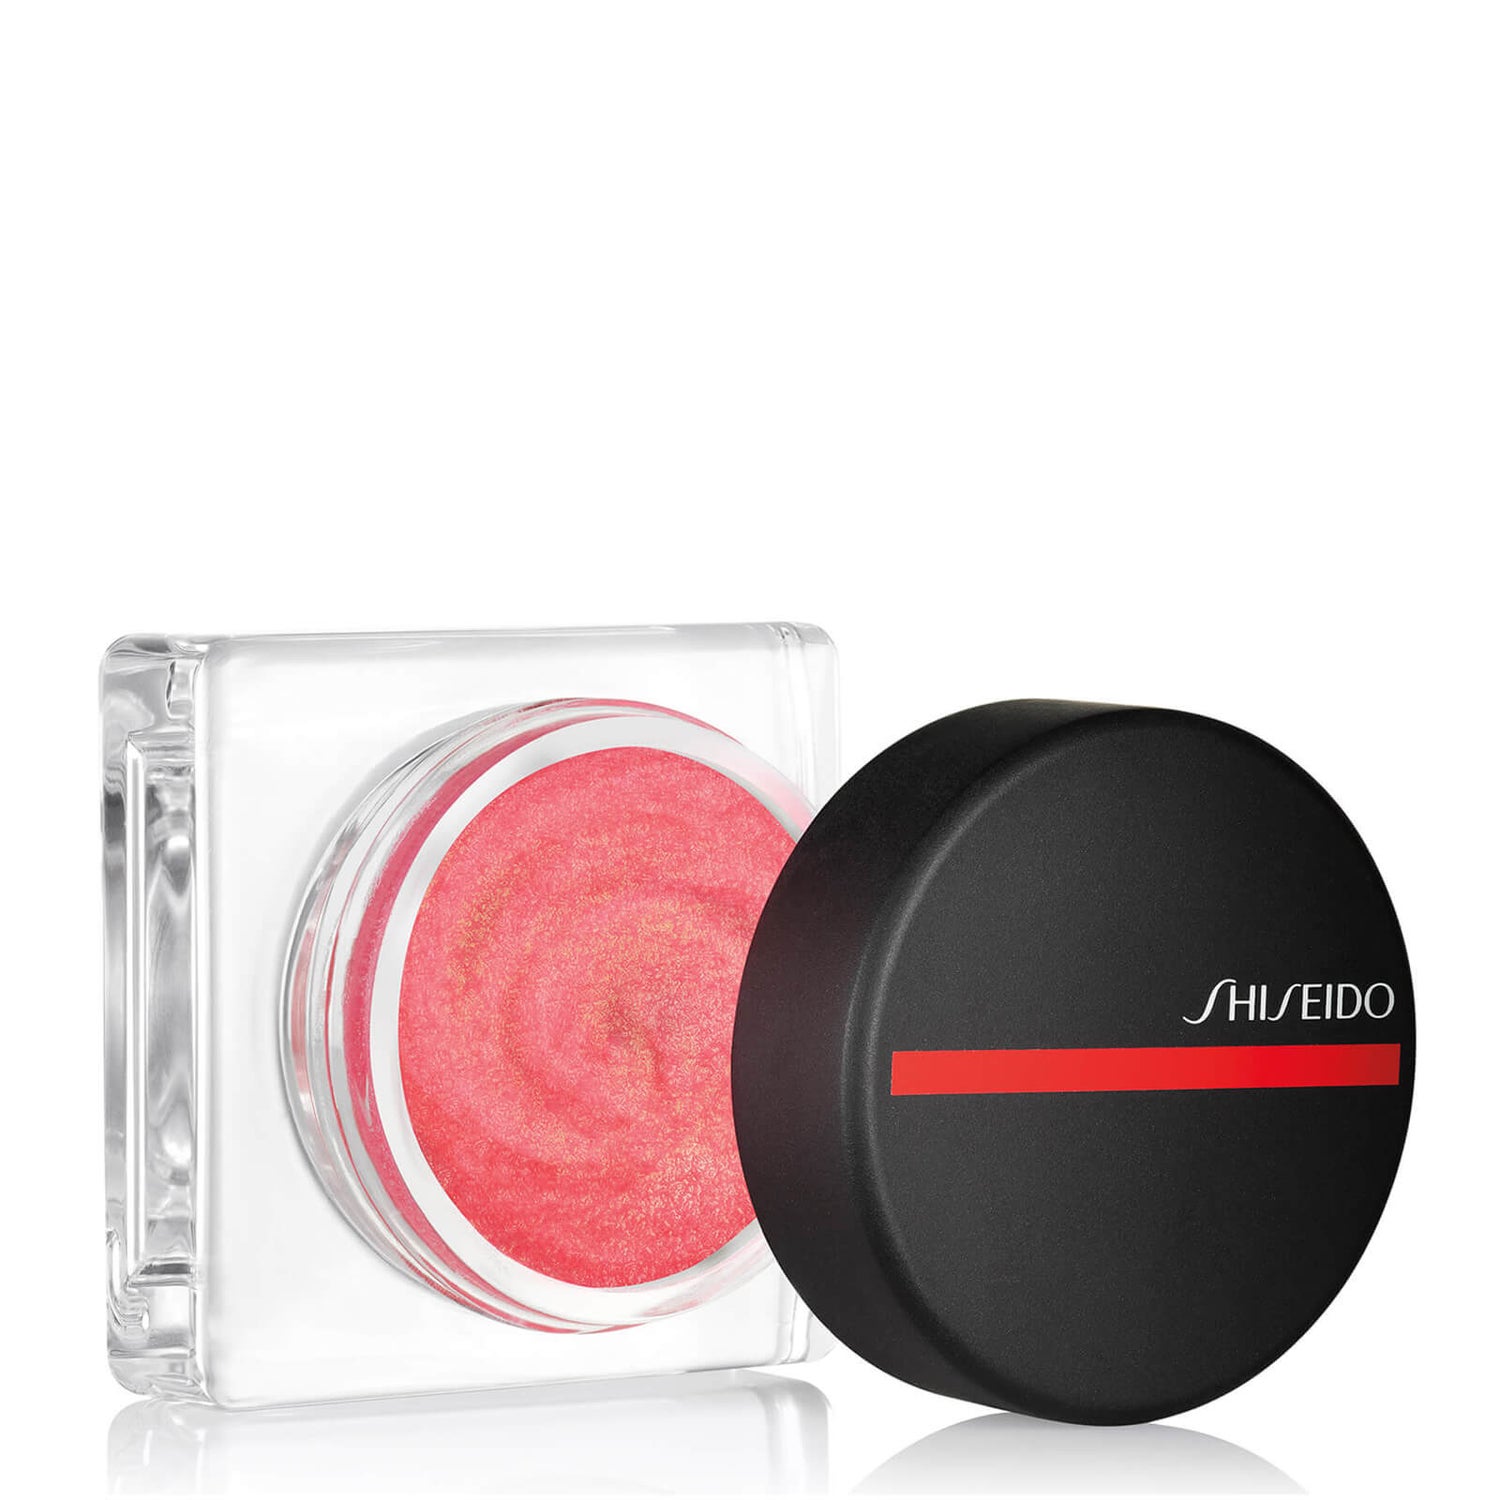 Shiseido Minimalist WhippedPowder Blush (olika nyanser)